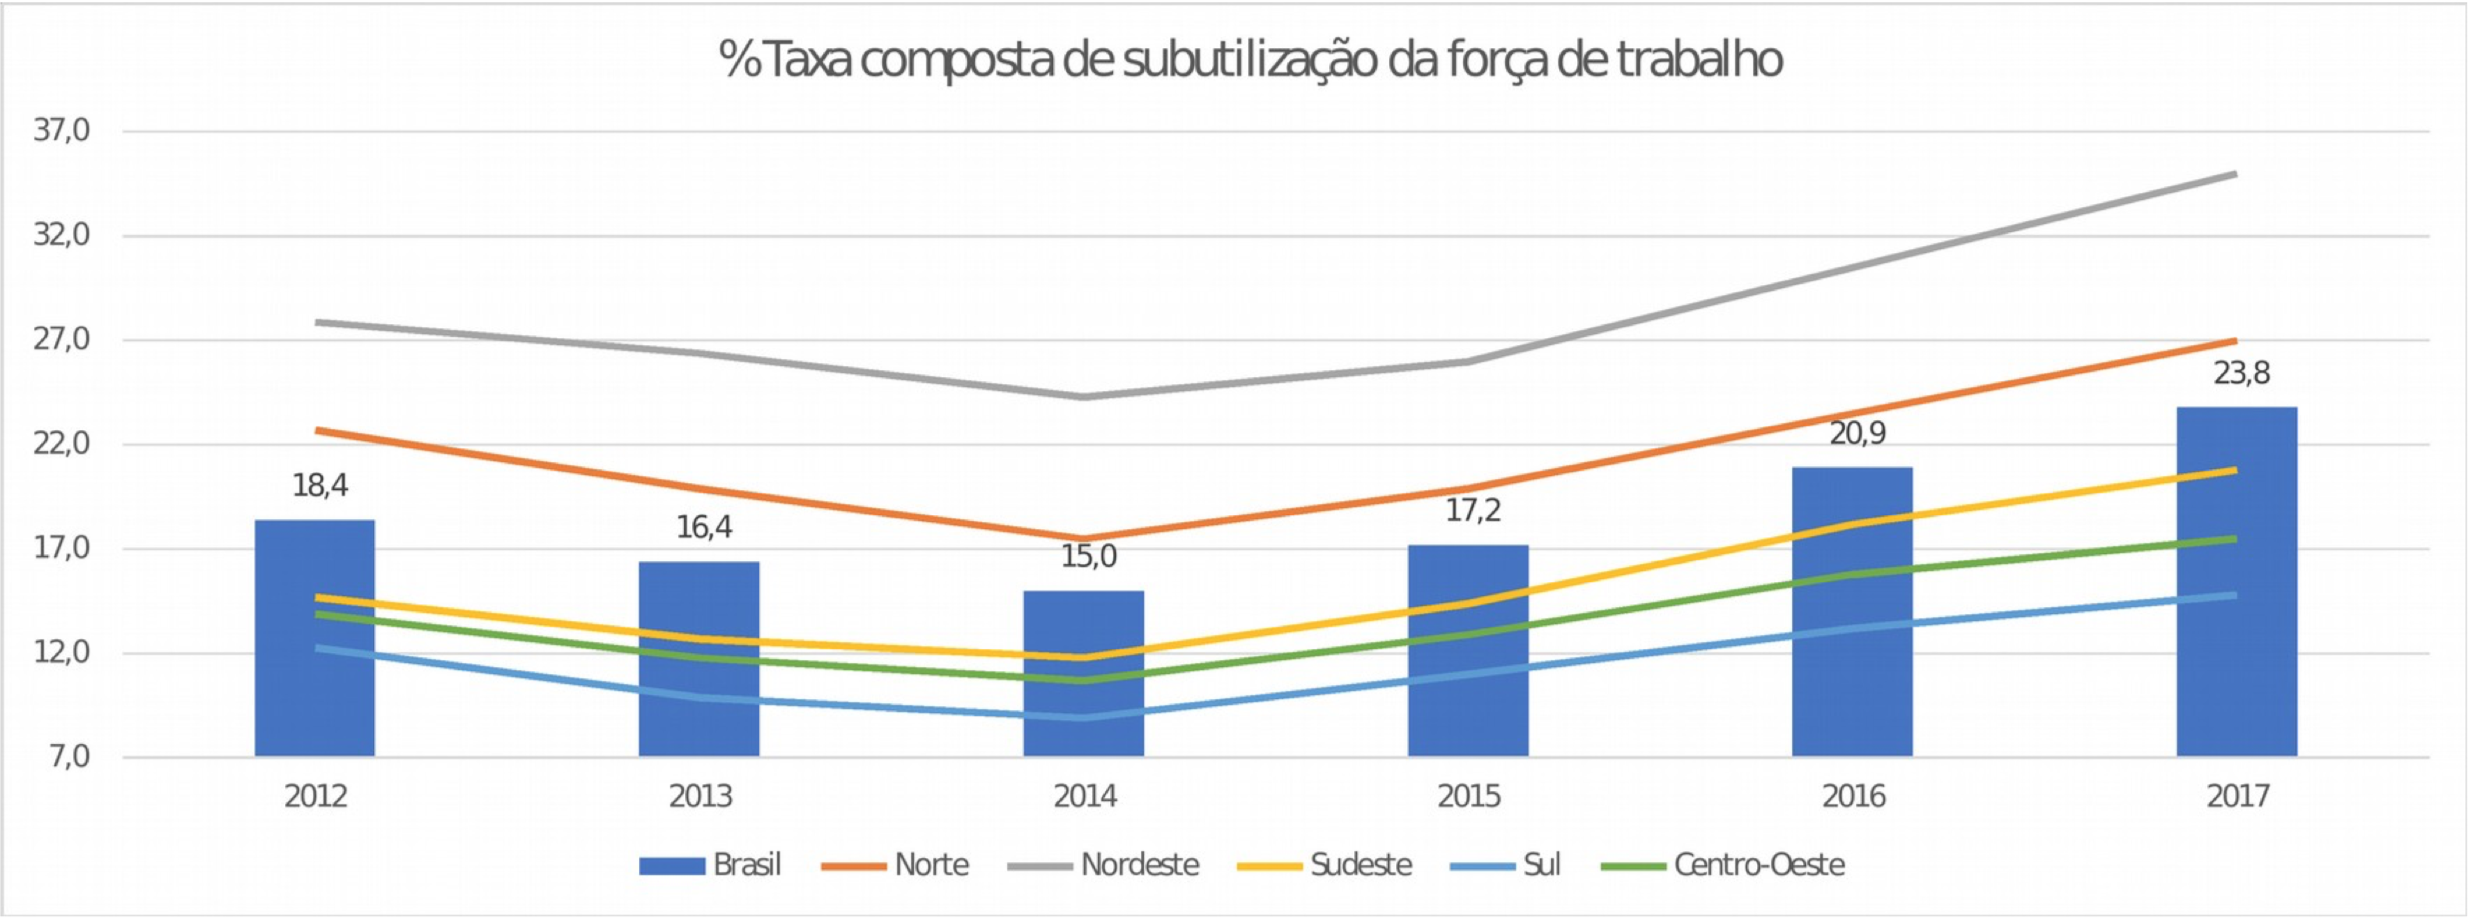 Desigualdades regionais do Brasil - Geografia - InfoEscola